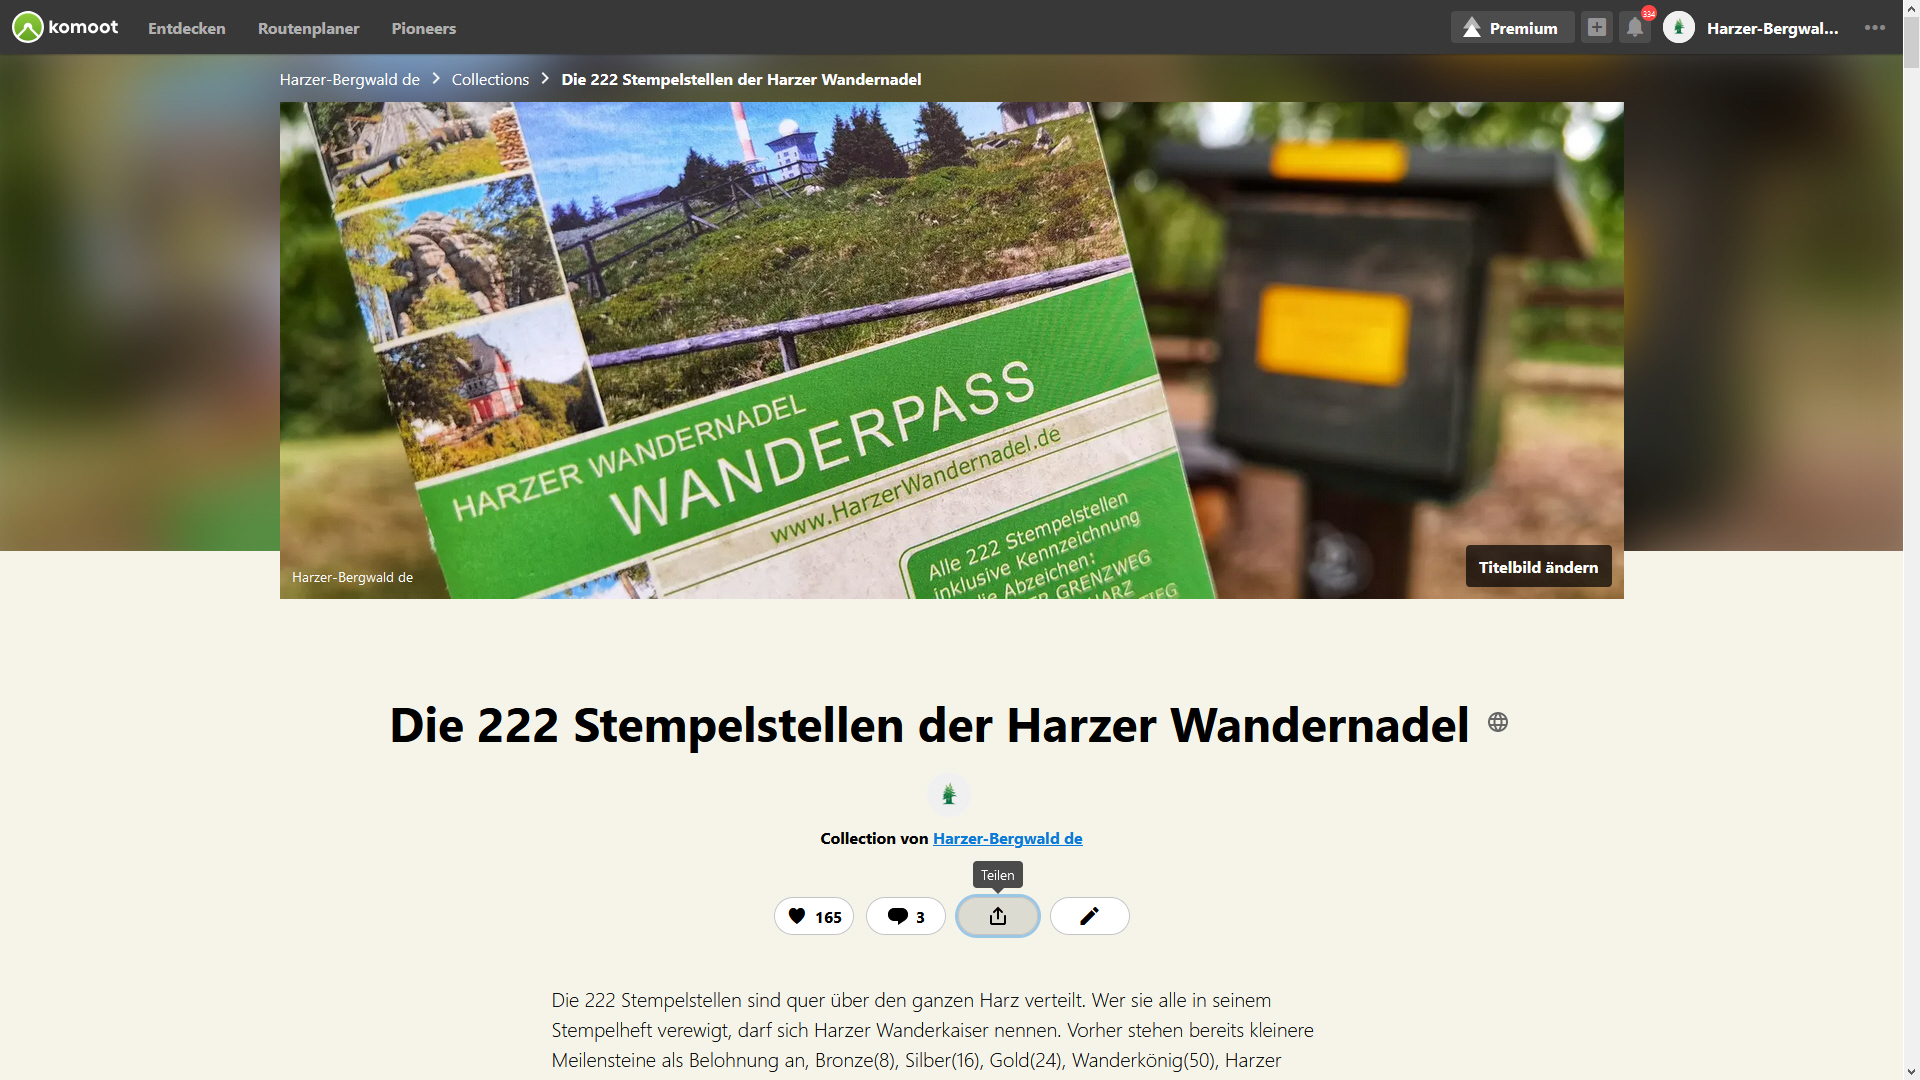 Die Komoot Collection der 222 Stempelstellen der Harzer Wandernadel